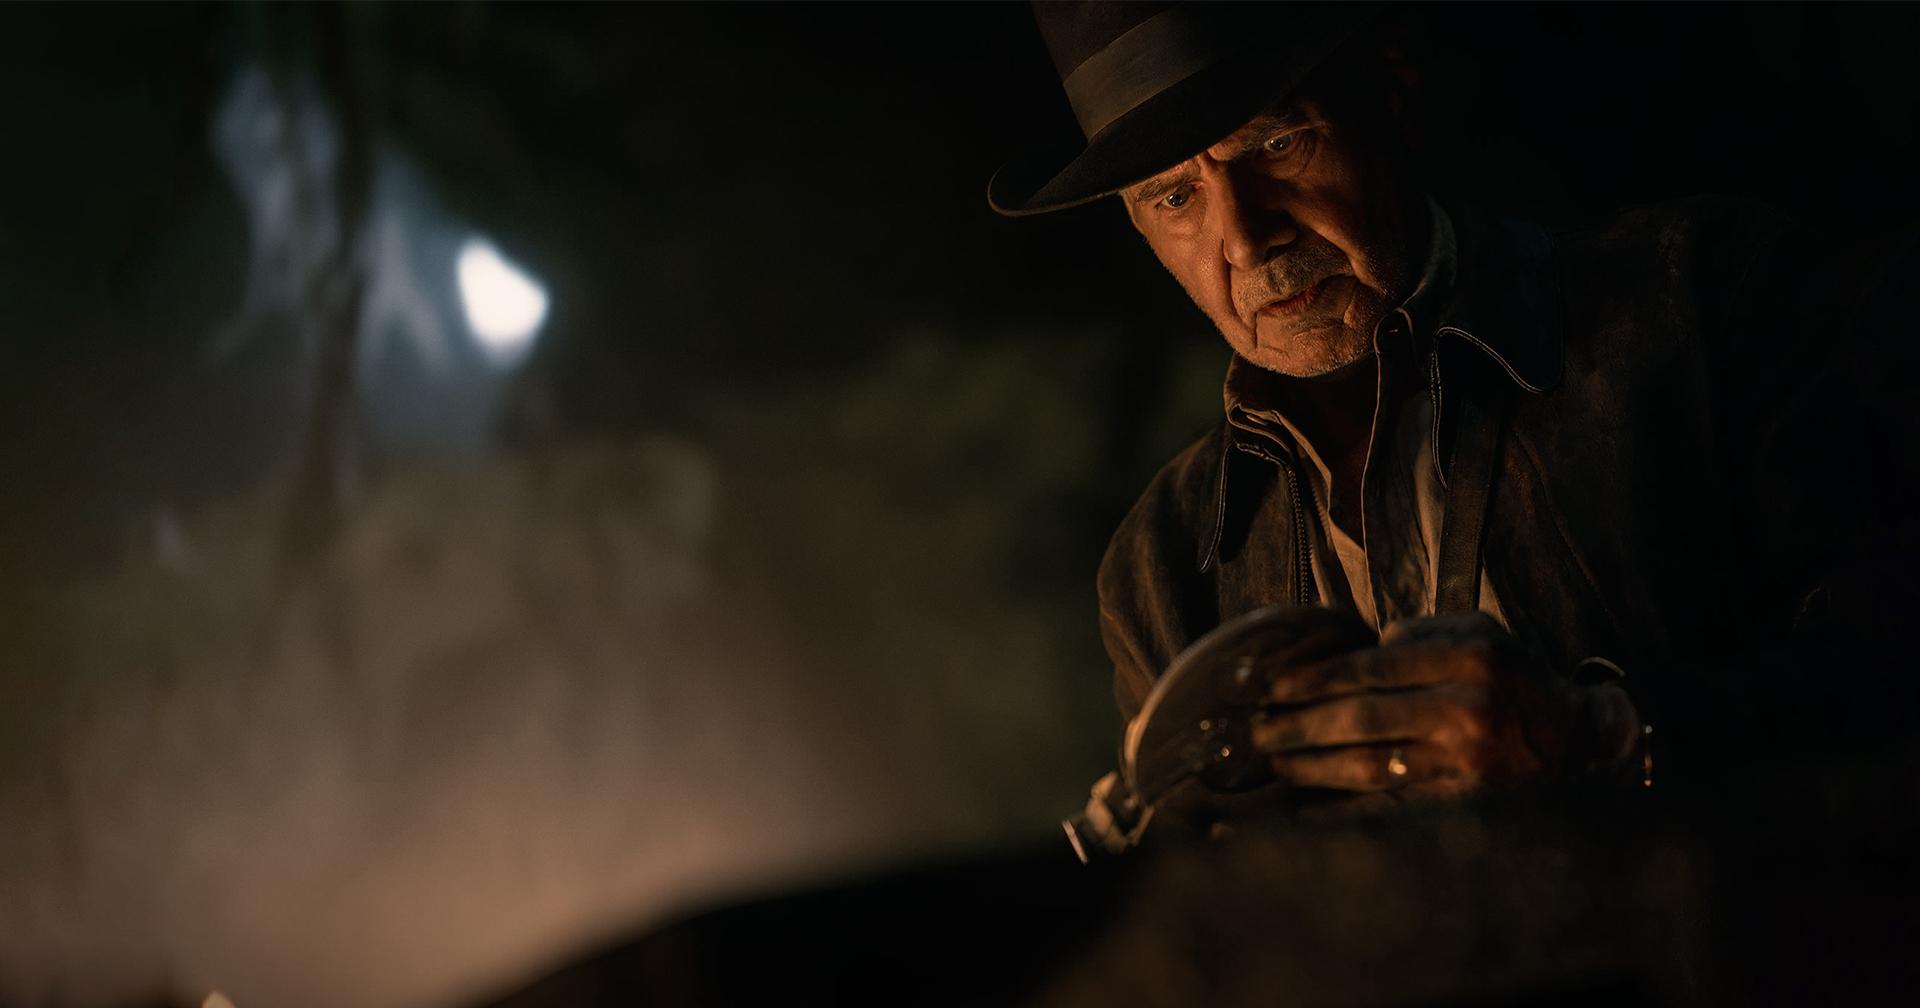 Indiana Jones and the Dial of Destiny: บันเทิงผจญภัยวัยเกษียณ ไม่สดใหม่แต่ได้คลาสสิก